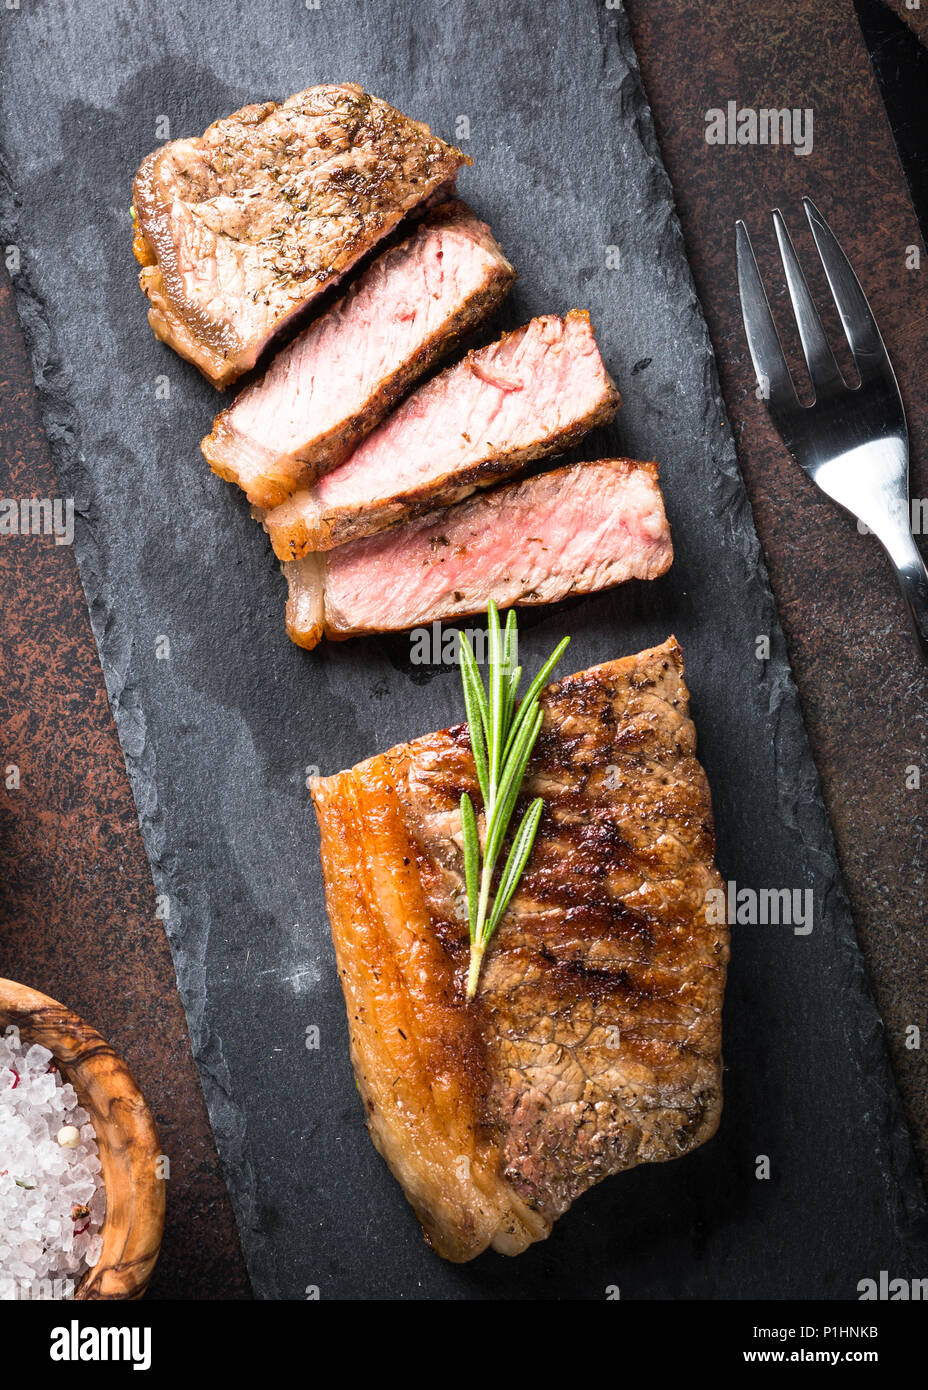 Pavé de boeuf. Faux filet grillé Steak sur une planche à découper avec le romarin. Vue d'en haut. Banque D'Images